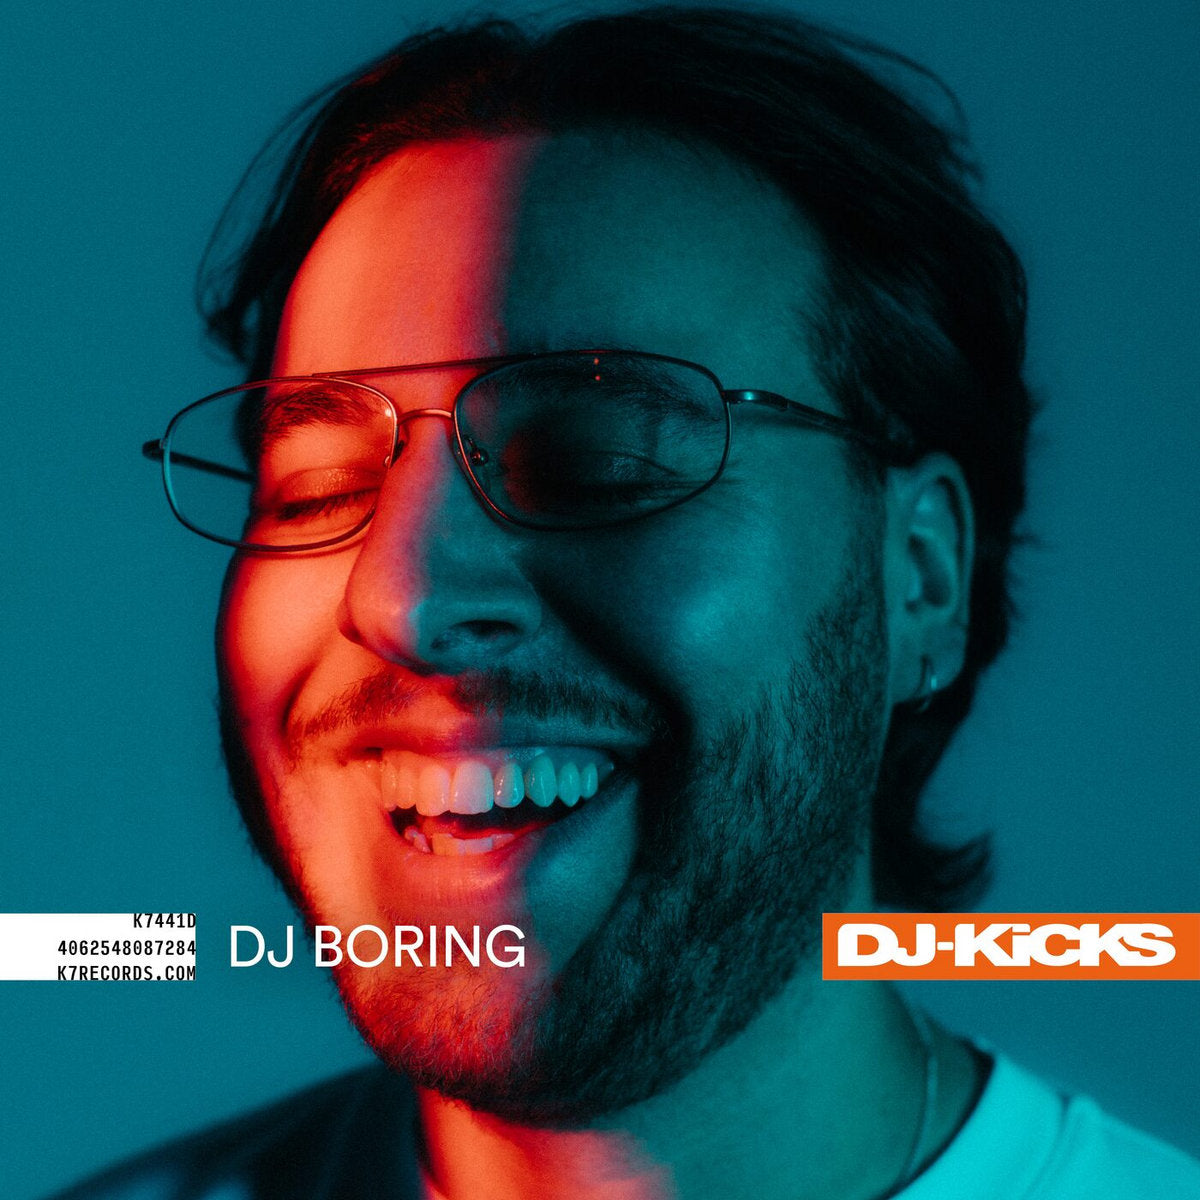 Various Artists, DJ Boring - DJ-Kicks - DJ Boring: Vinyl 2LP